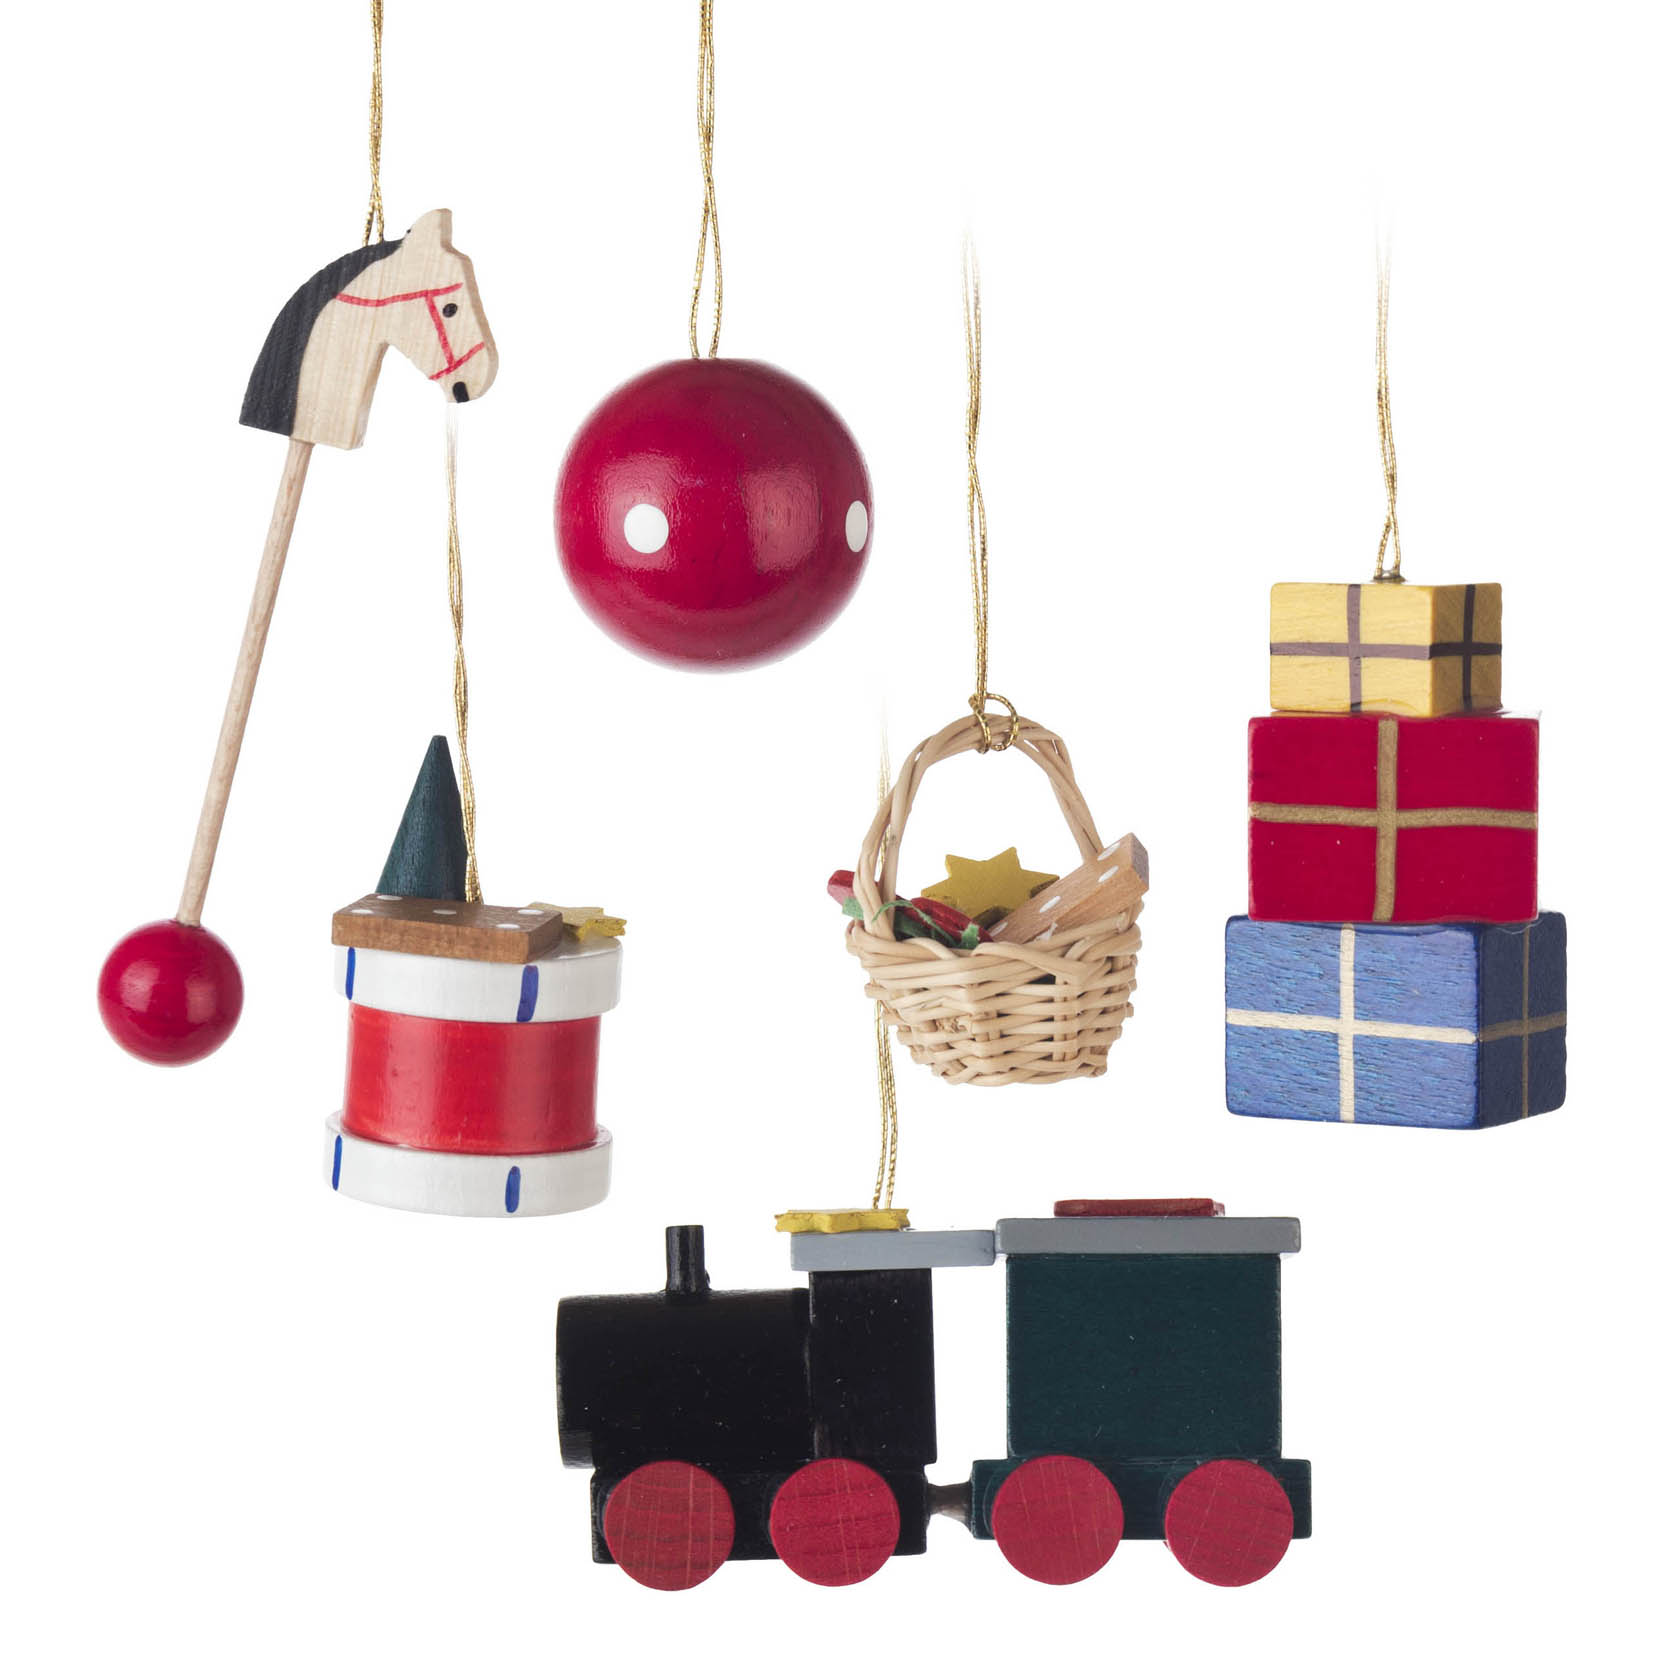 Behang Spielzeug (6) im Dregeno Online Shop günstig kaufen